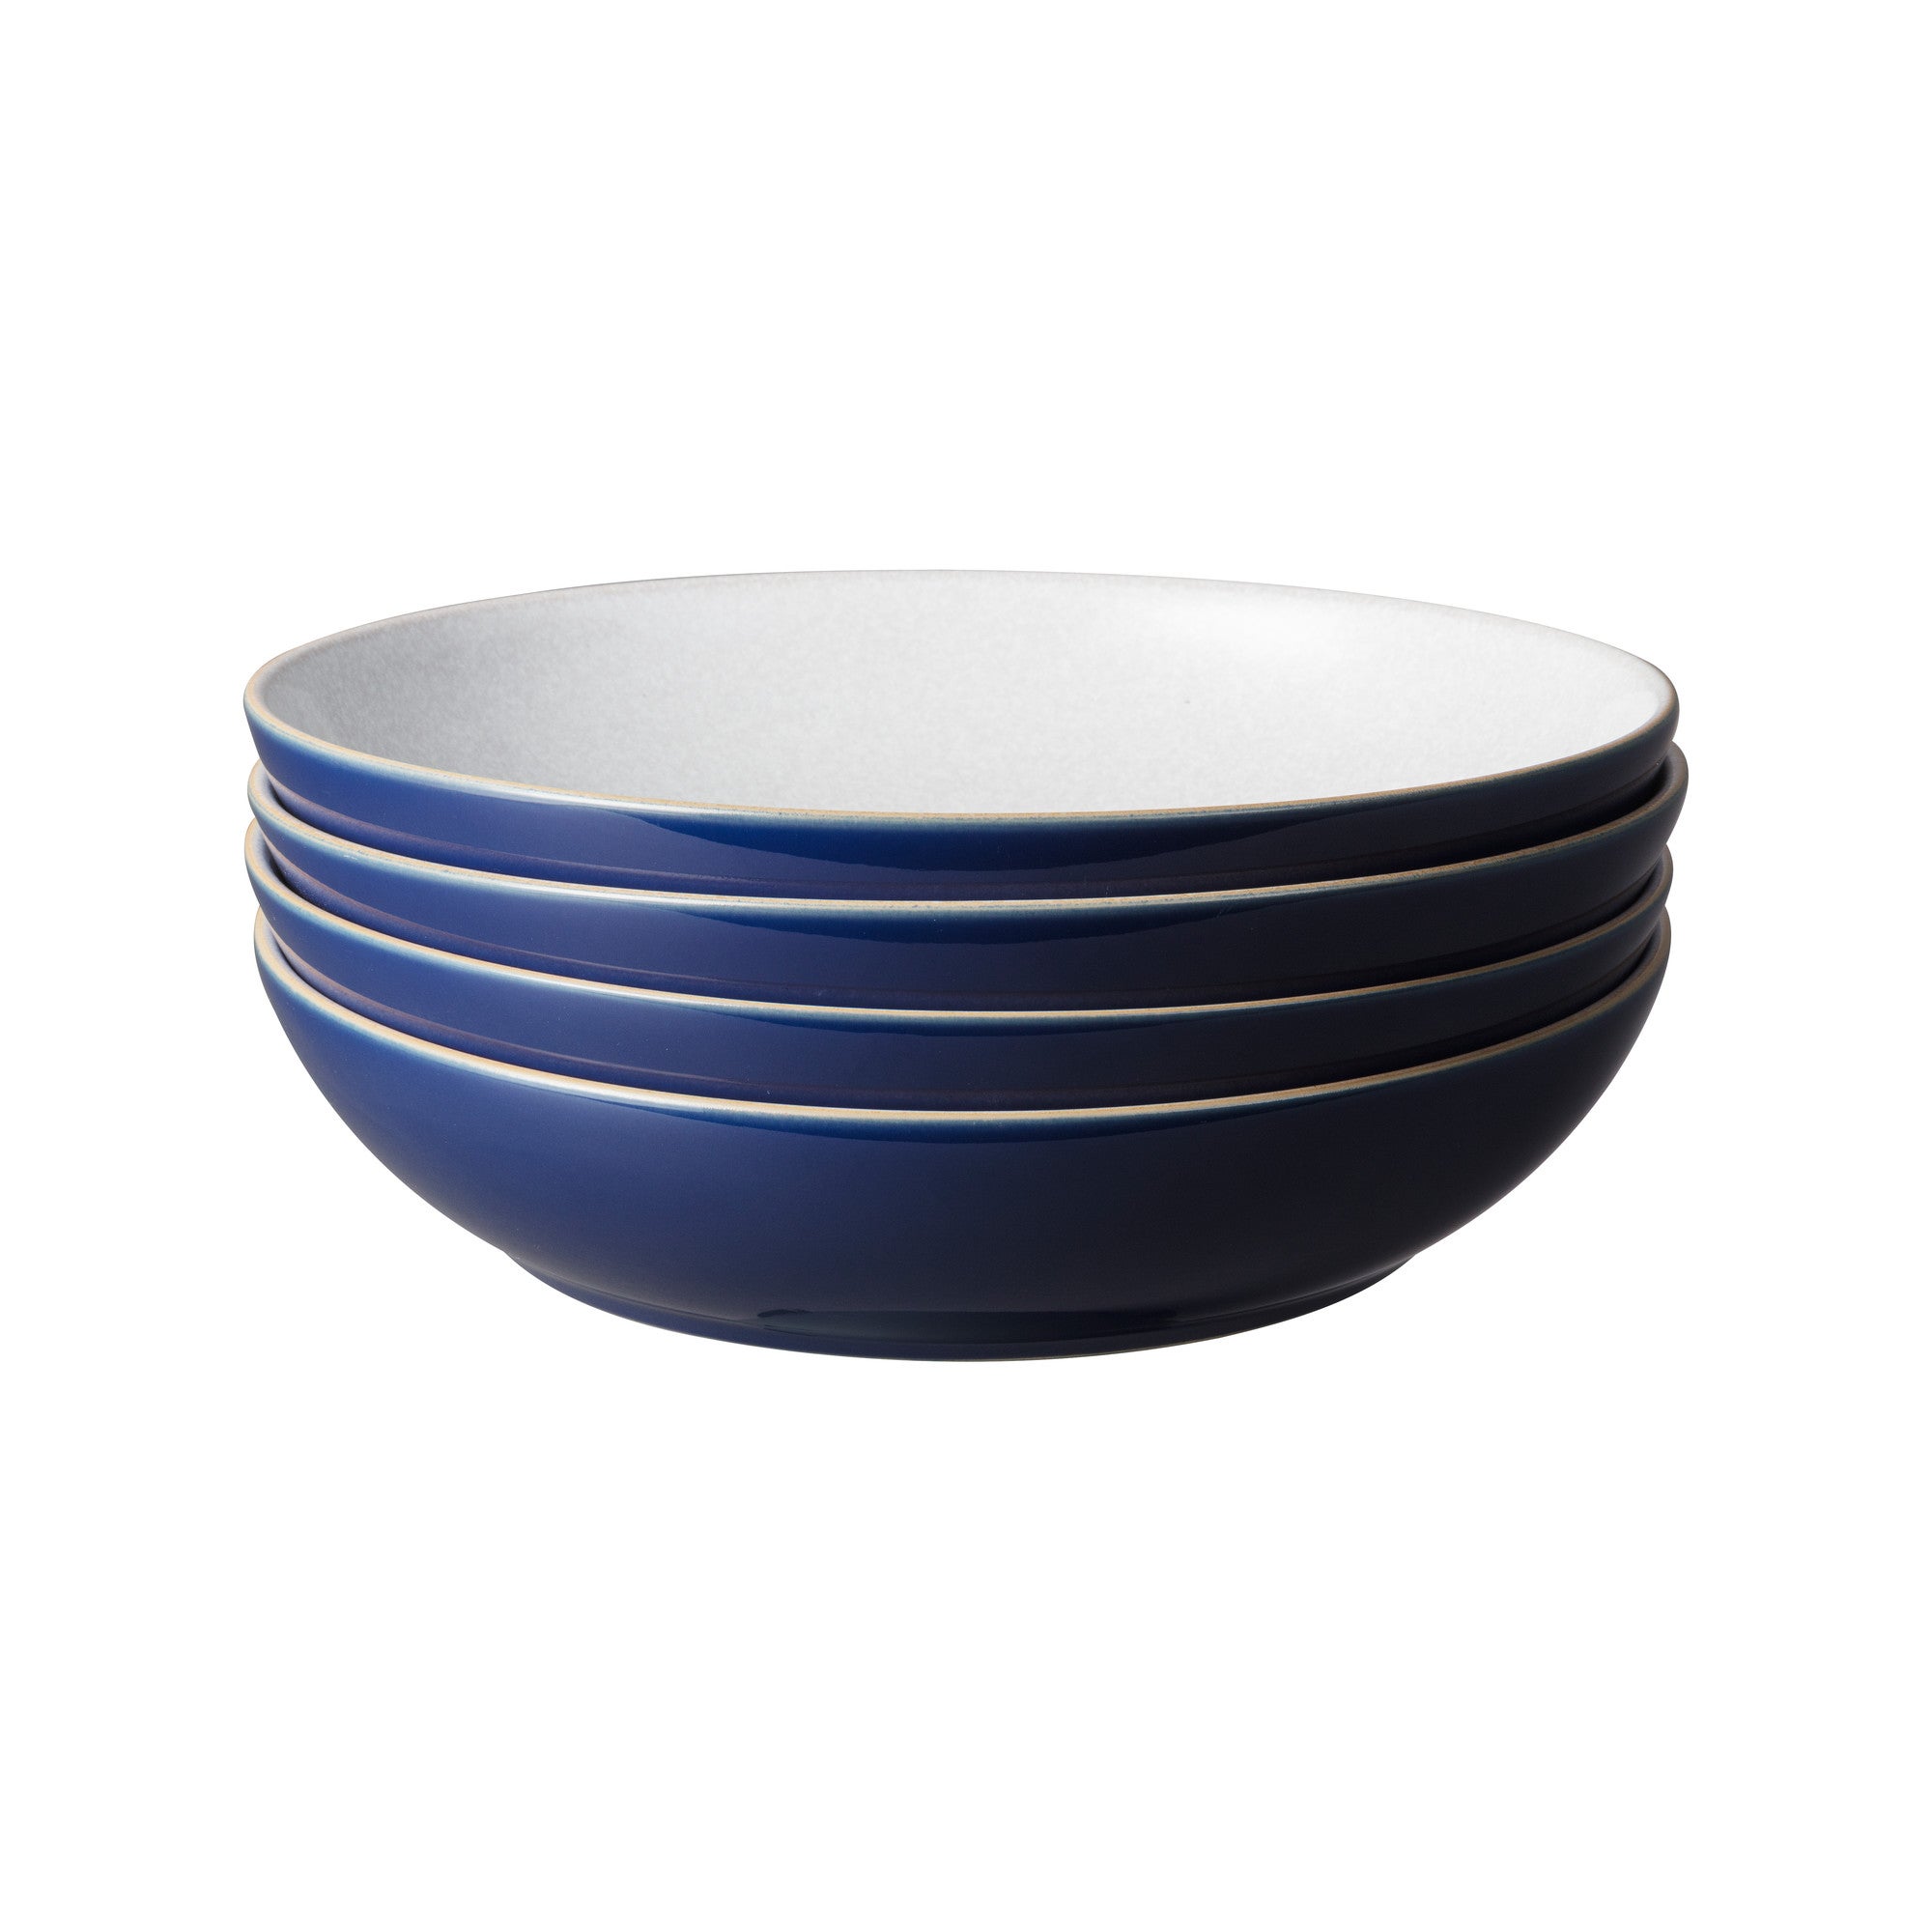 Set Of 4 Denby Elements Dark Blue Pasta Bowls Blue